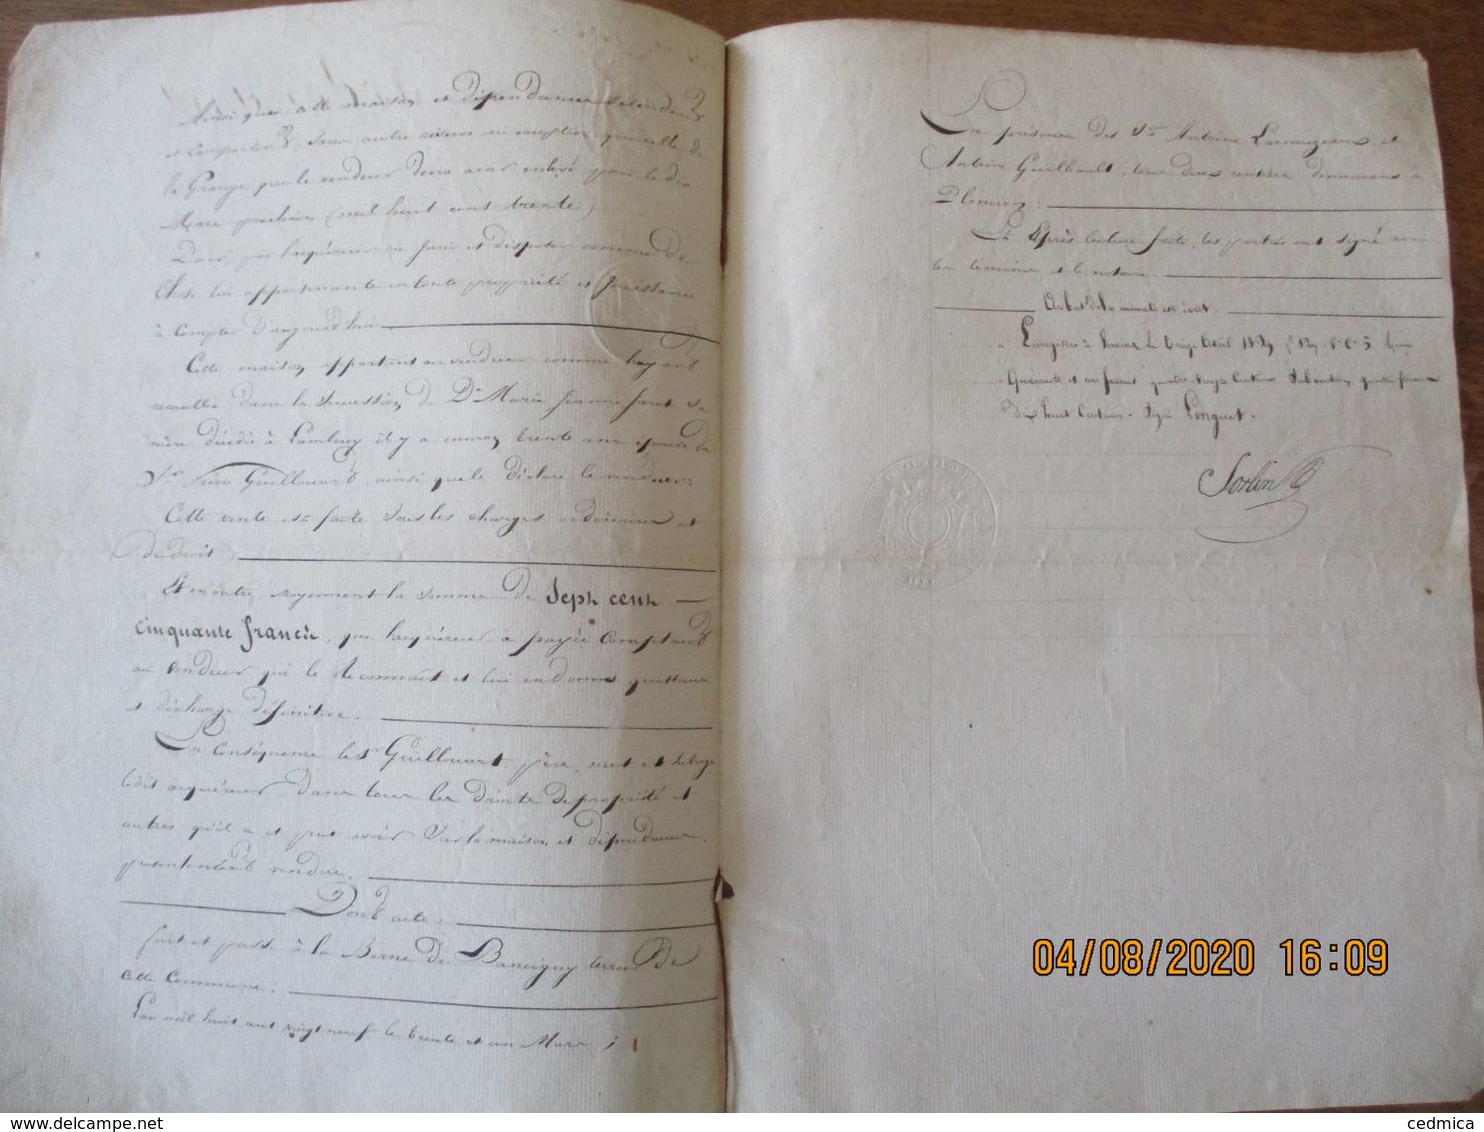 LAMBERCY LE 31 MARS 1829 VENTE PAR LE SIEUR JOSEPH GUILLOUART AU SIEUR JOSEPH FREDERIC GUILLOUART D'UNE MAISON PLACE D'E - Manuskripte